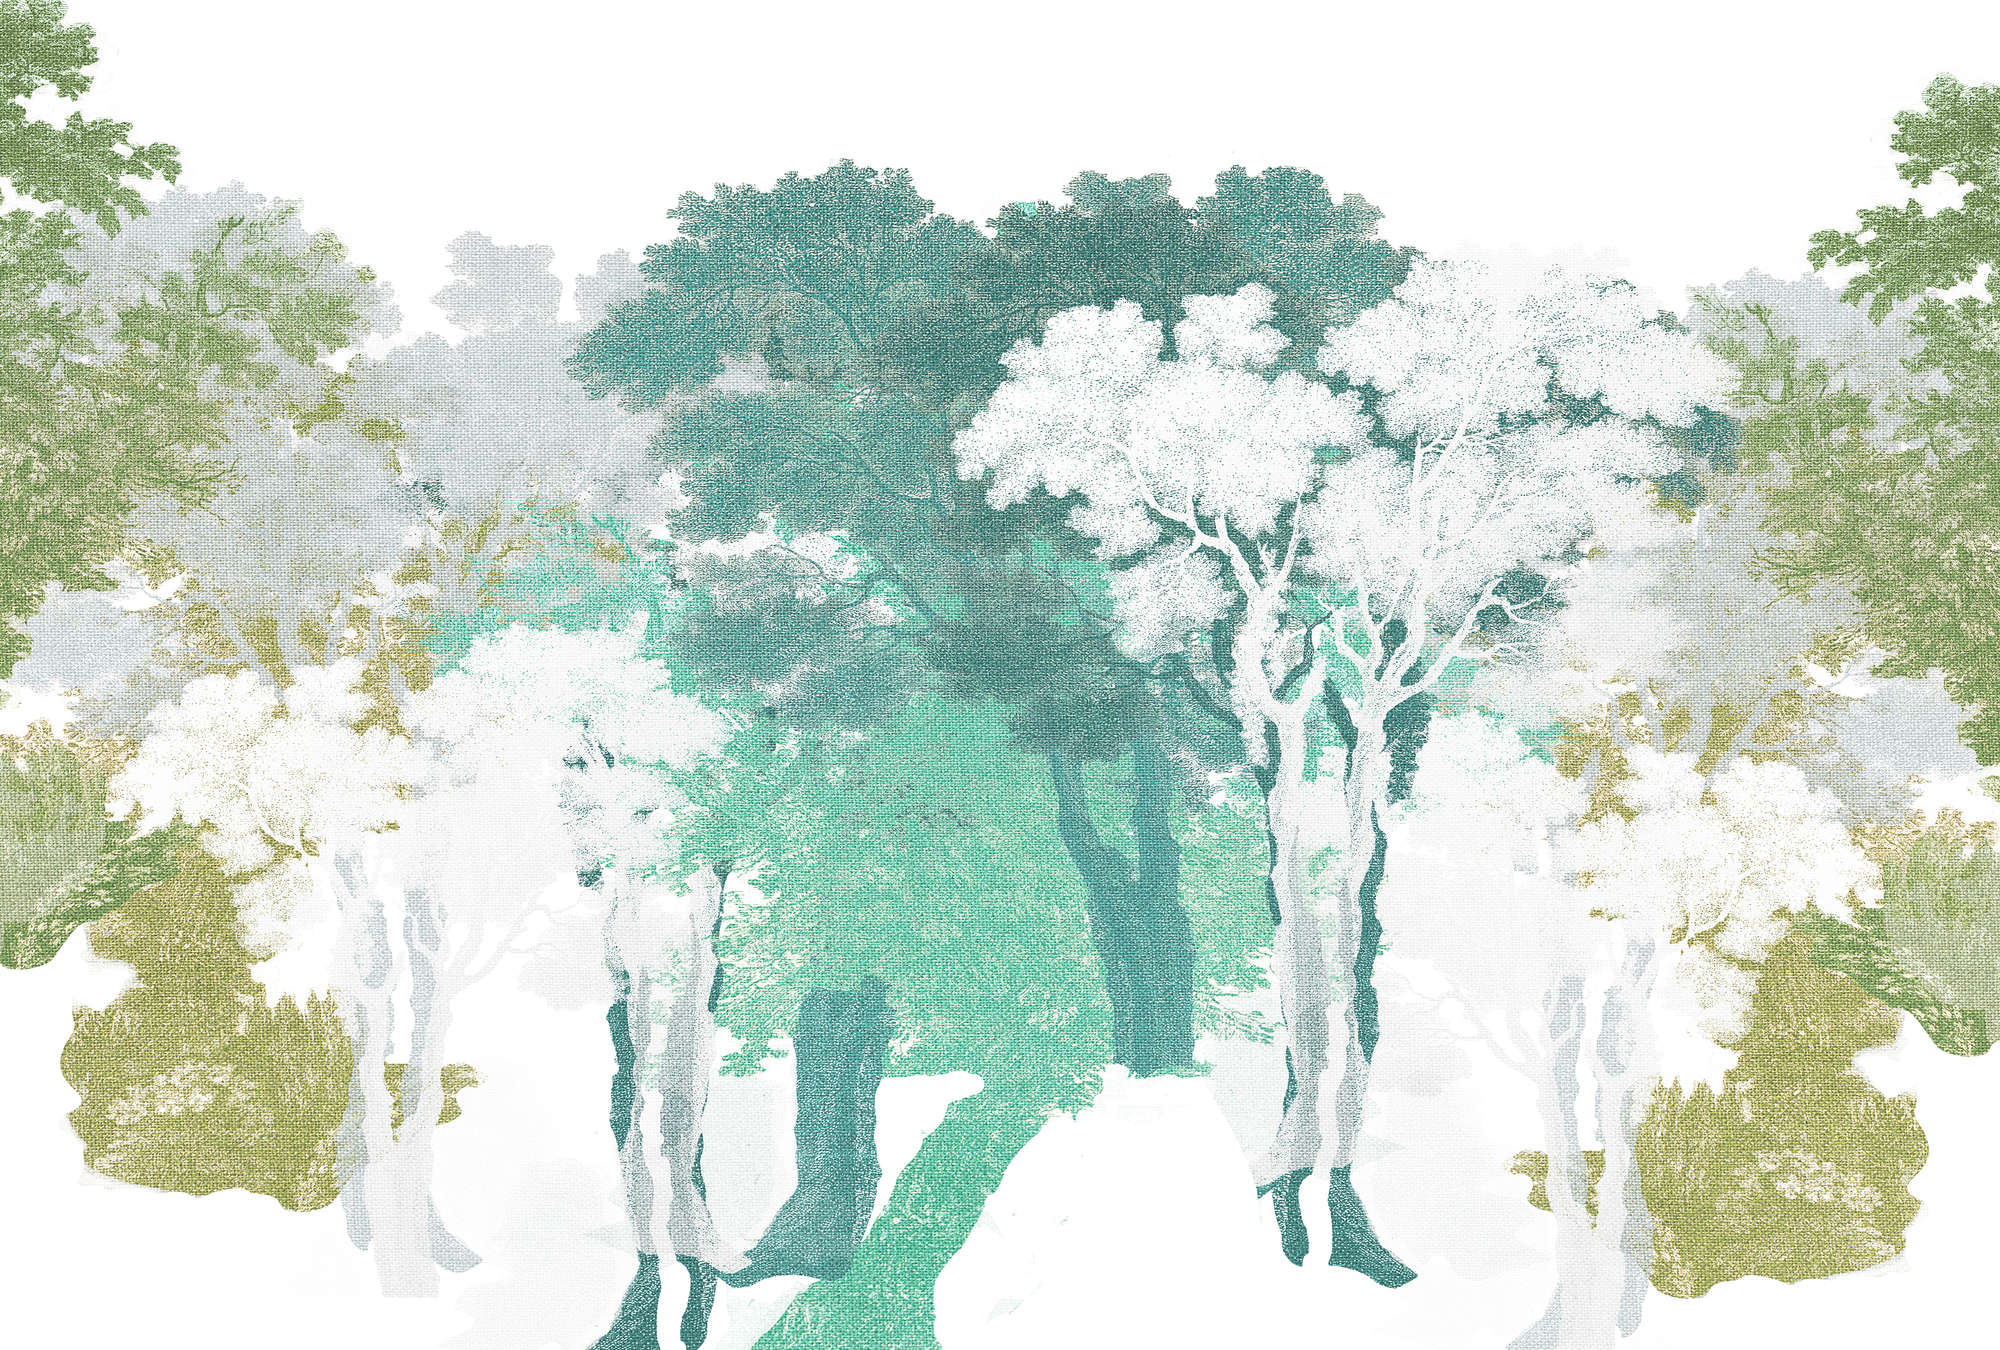             Fotomurali con motivo ad albero, aspetto foresta e lino - verde, bianco, grigio
        